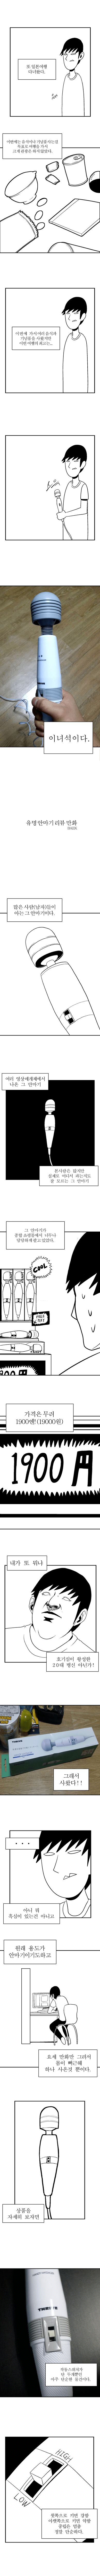 유명 안마기 후기 만화.jpg